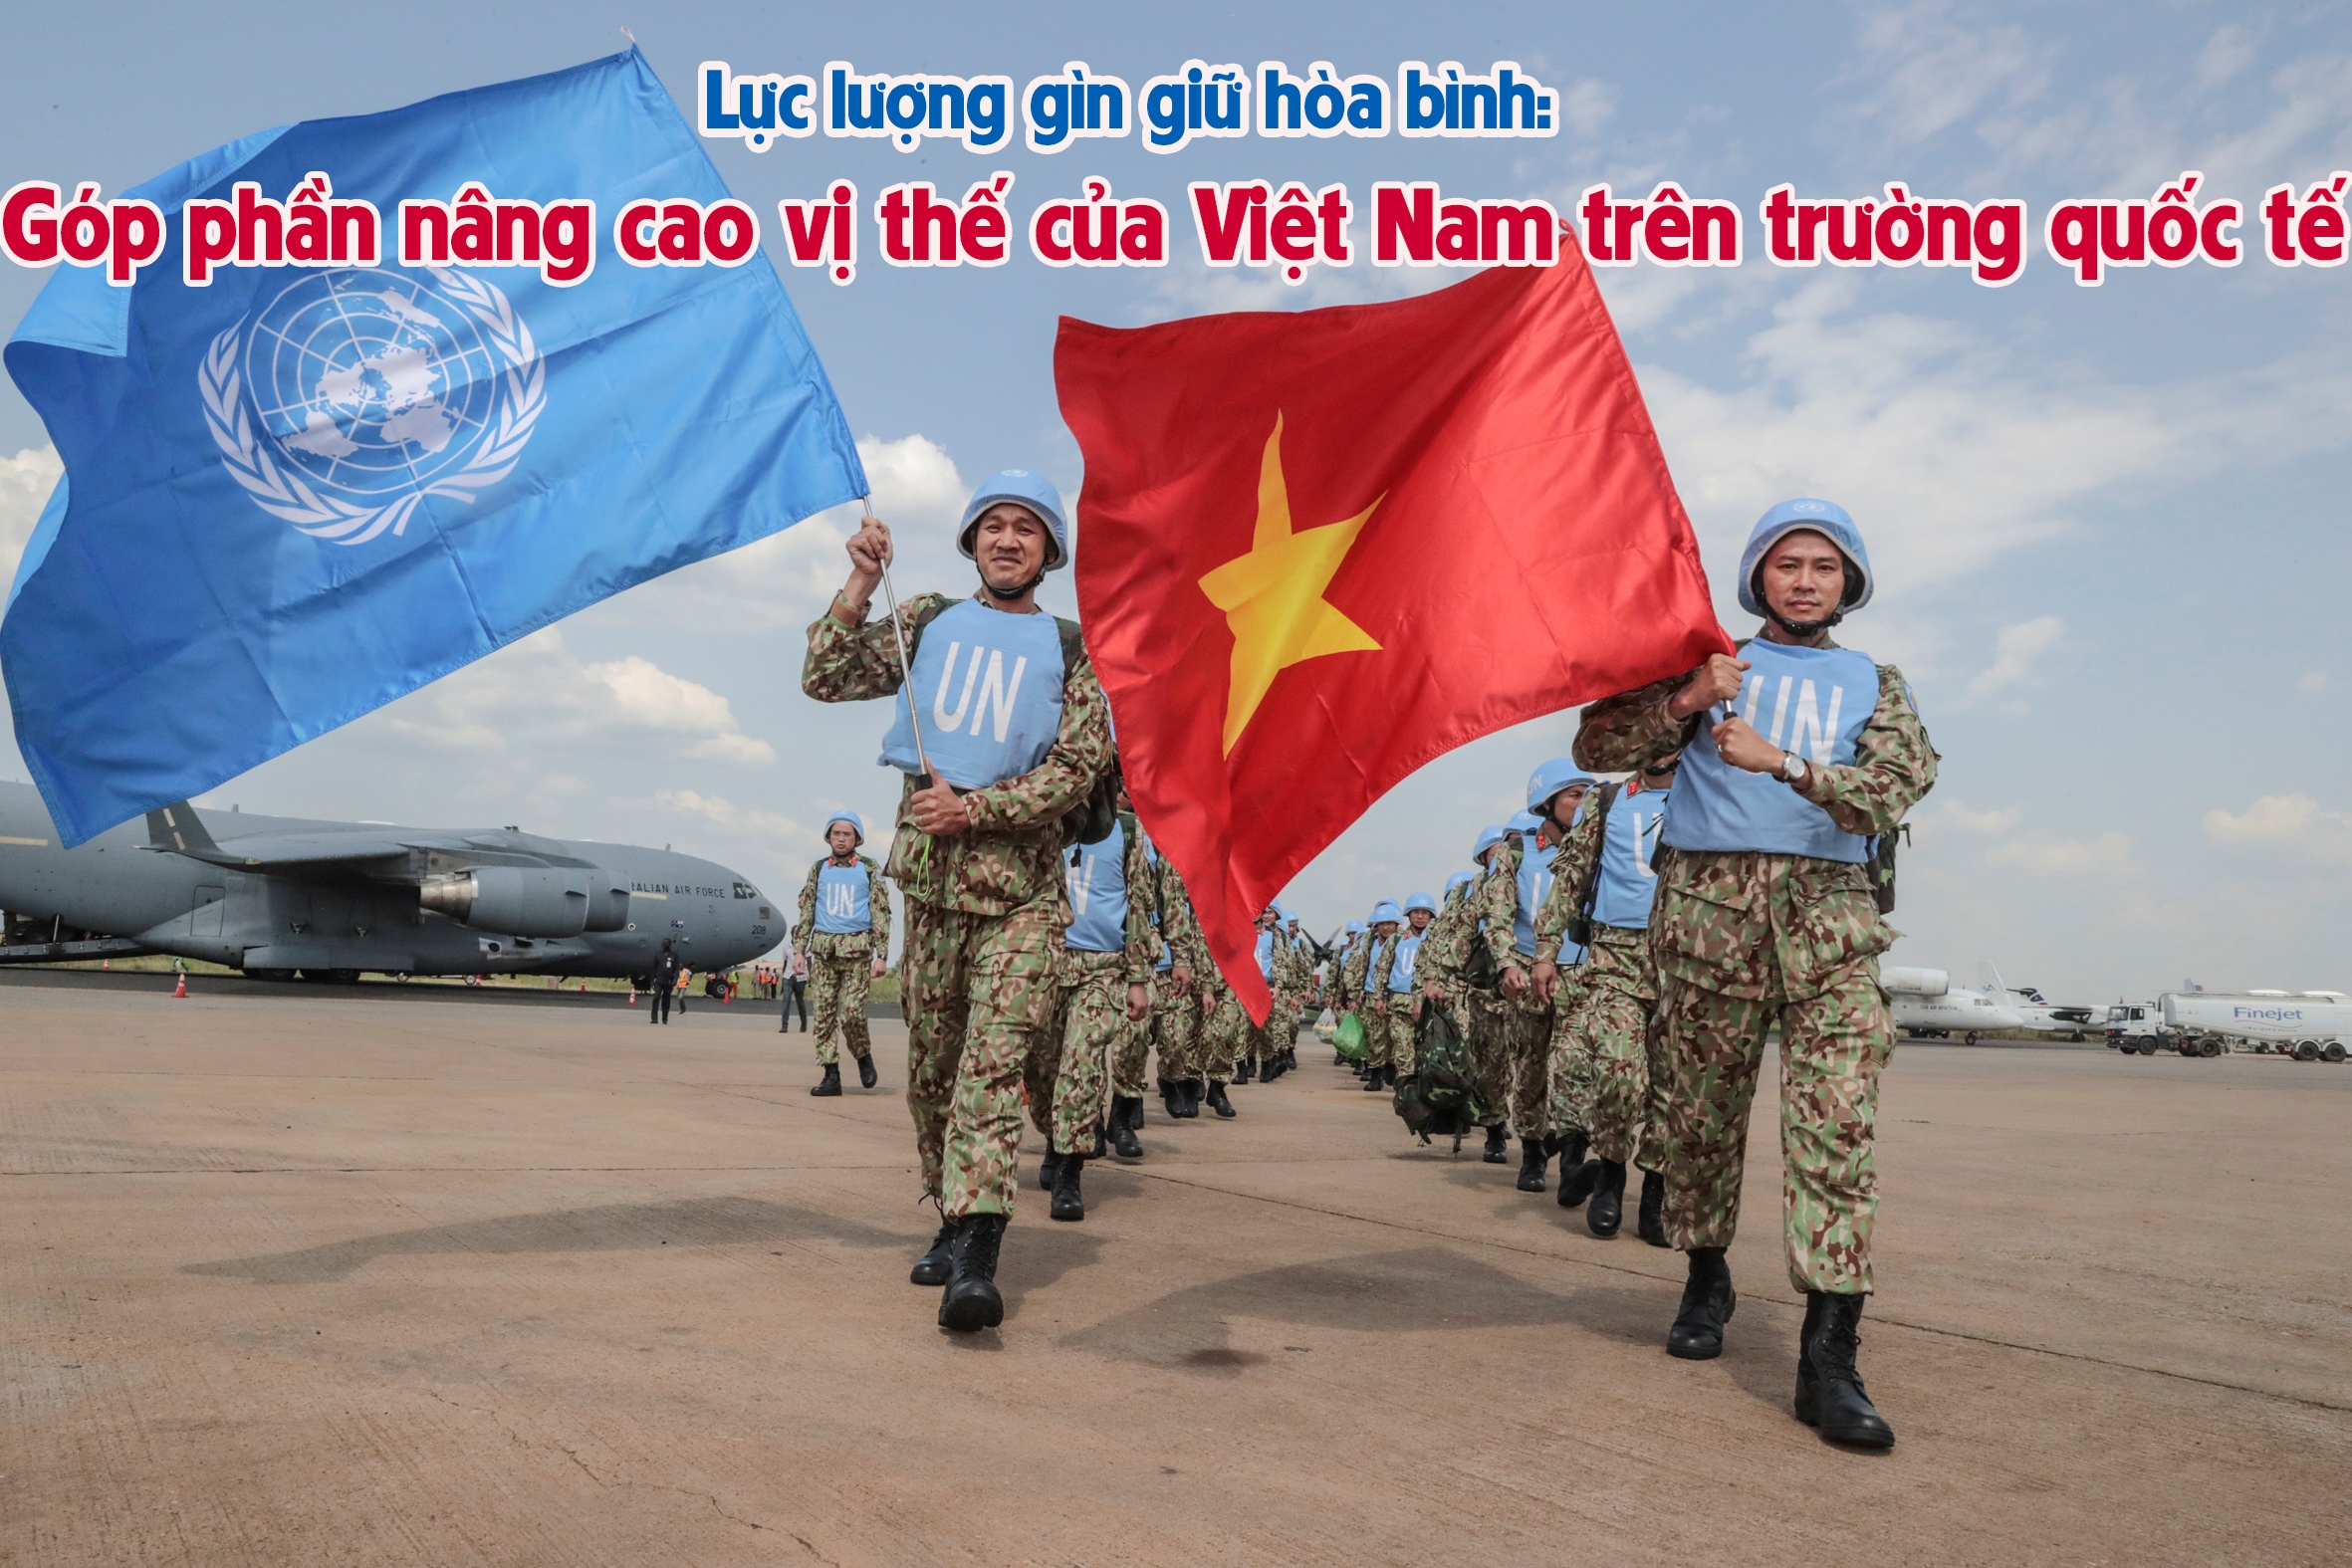 Biểu tượng đại diện cho lực lượng gìn giữ hòa bình Việt Nam chắc chắn sẽ khiến bạn cảm thấy tự hào! Ngay cả khi bạn chưa từng biết đến nó, bức ảnh này sẽ giúp bạn hiểu rõ hơn về các hoạt động của lực lượng này và tầm quan trọng của họ trong việc duy trì hòa bình trên toàn cầu.